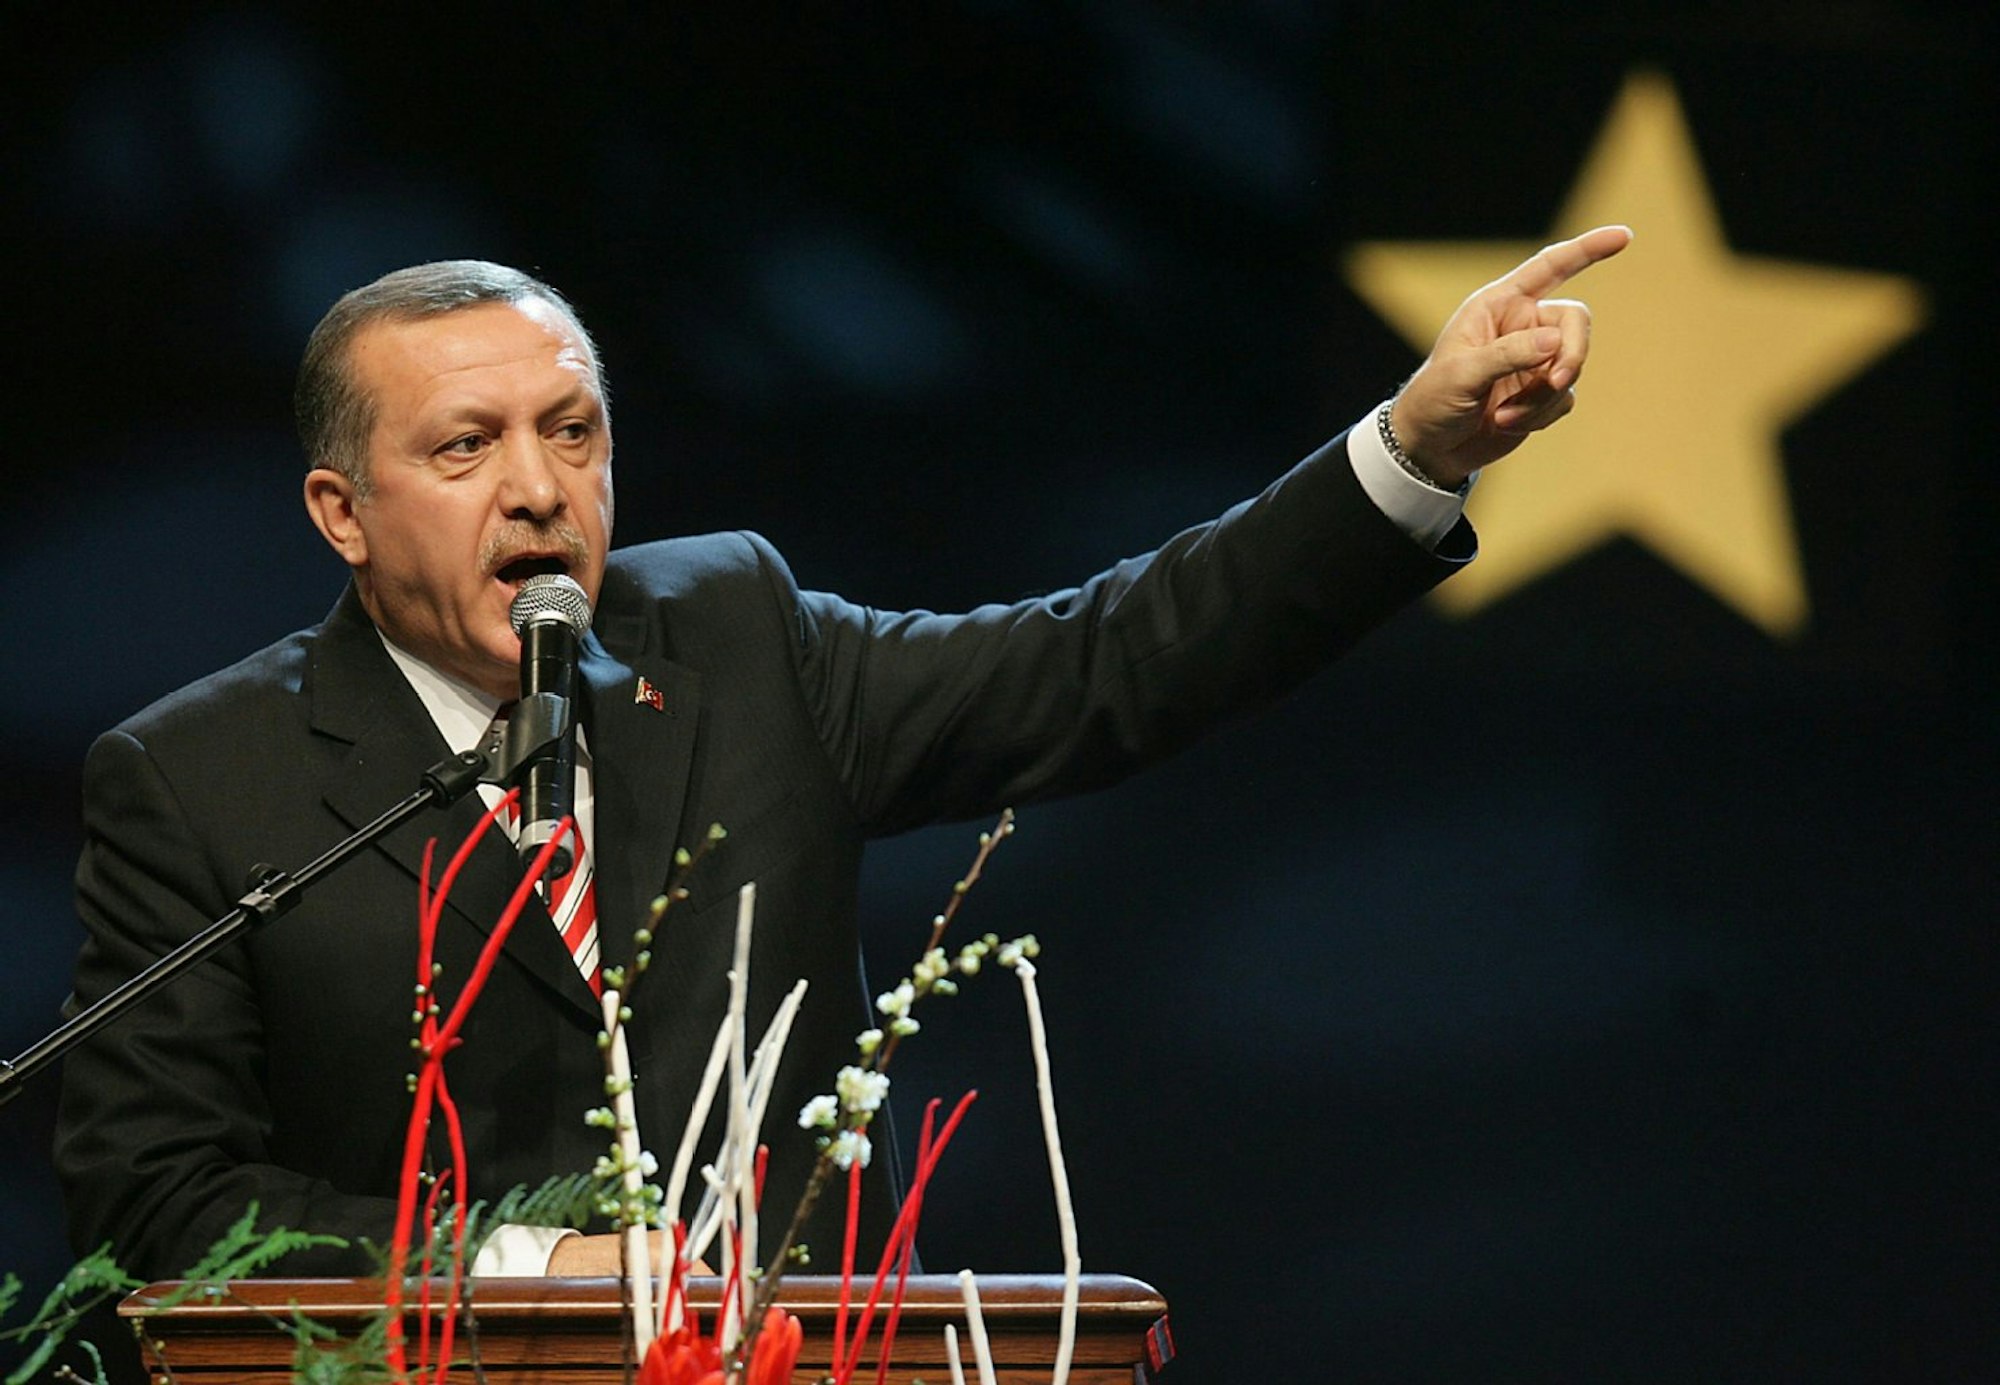 ARCHIV - Der türkische Ministerpräsident Recep Tayyip Erdogan spricht am Sonntag (10.02.2008) in Köln zu seinen Landsleuten.